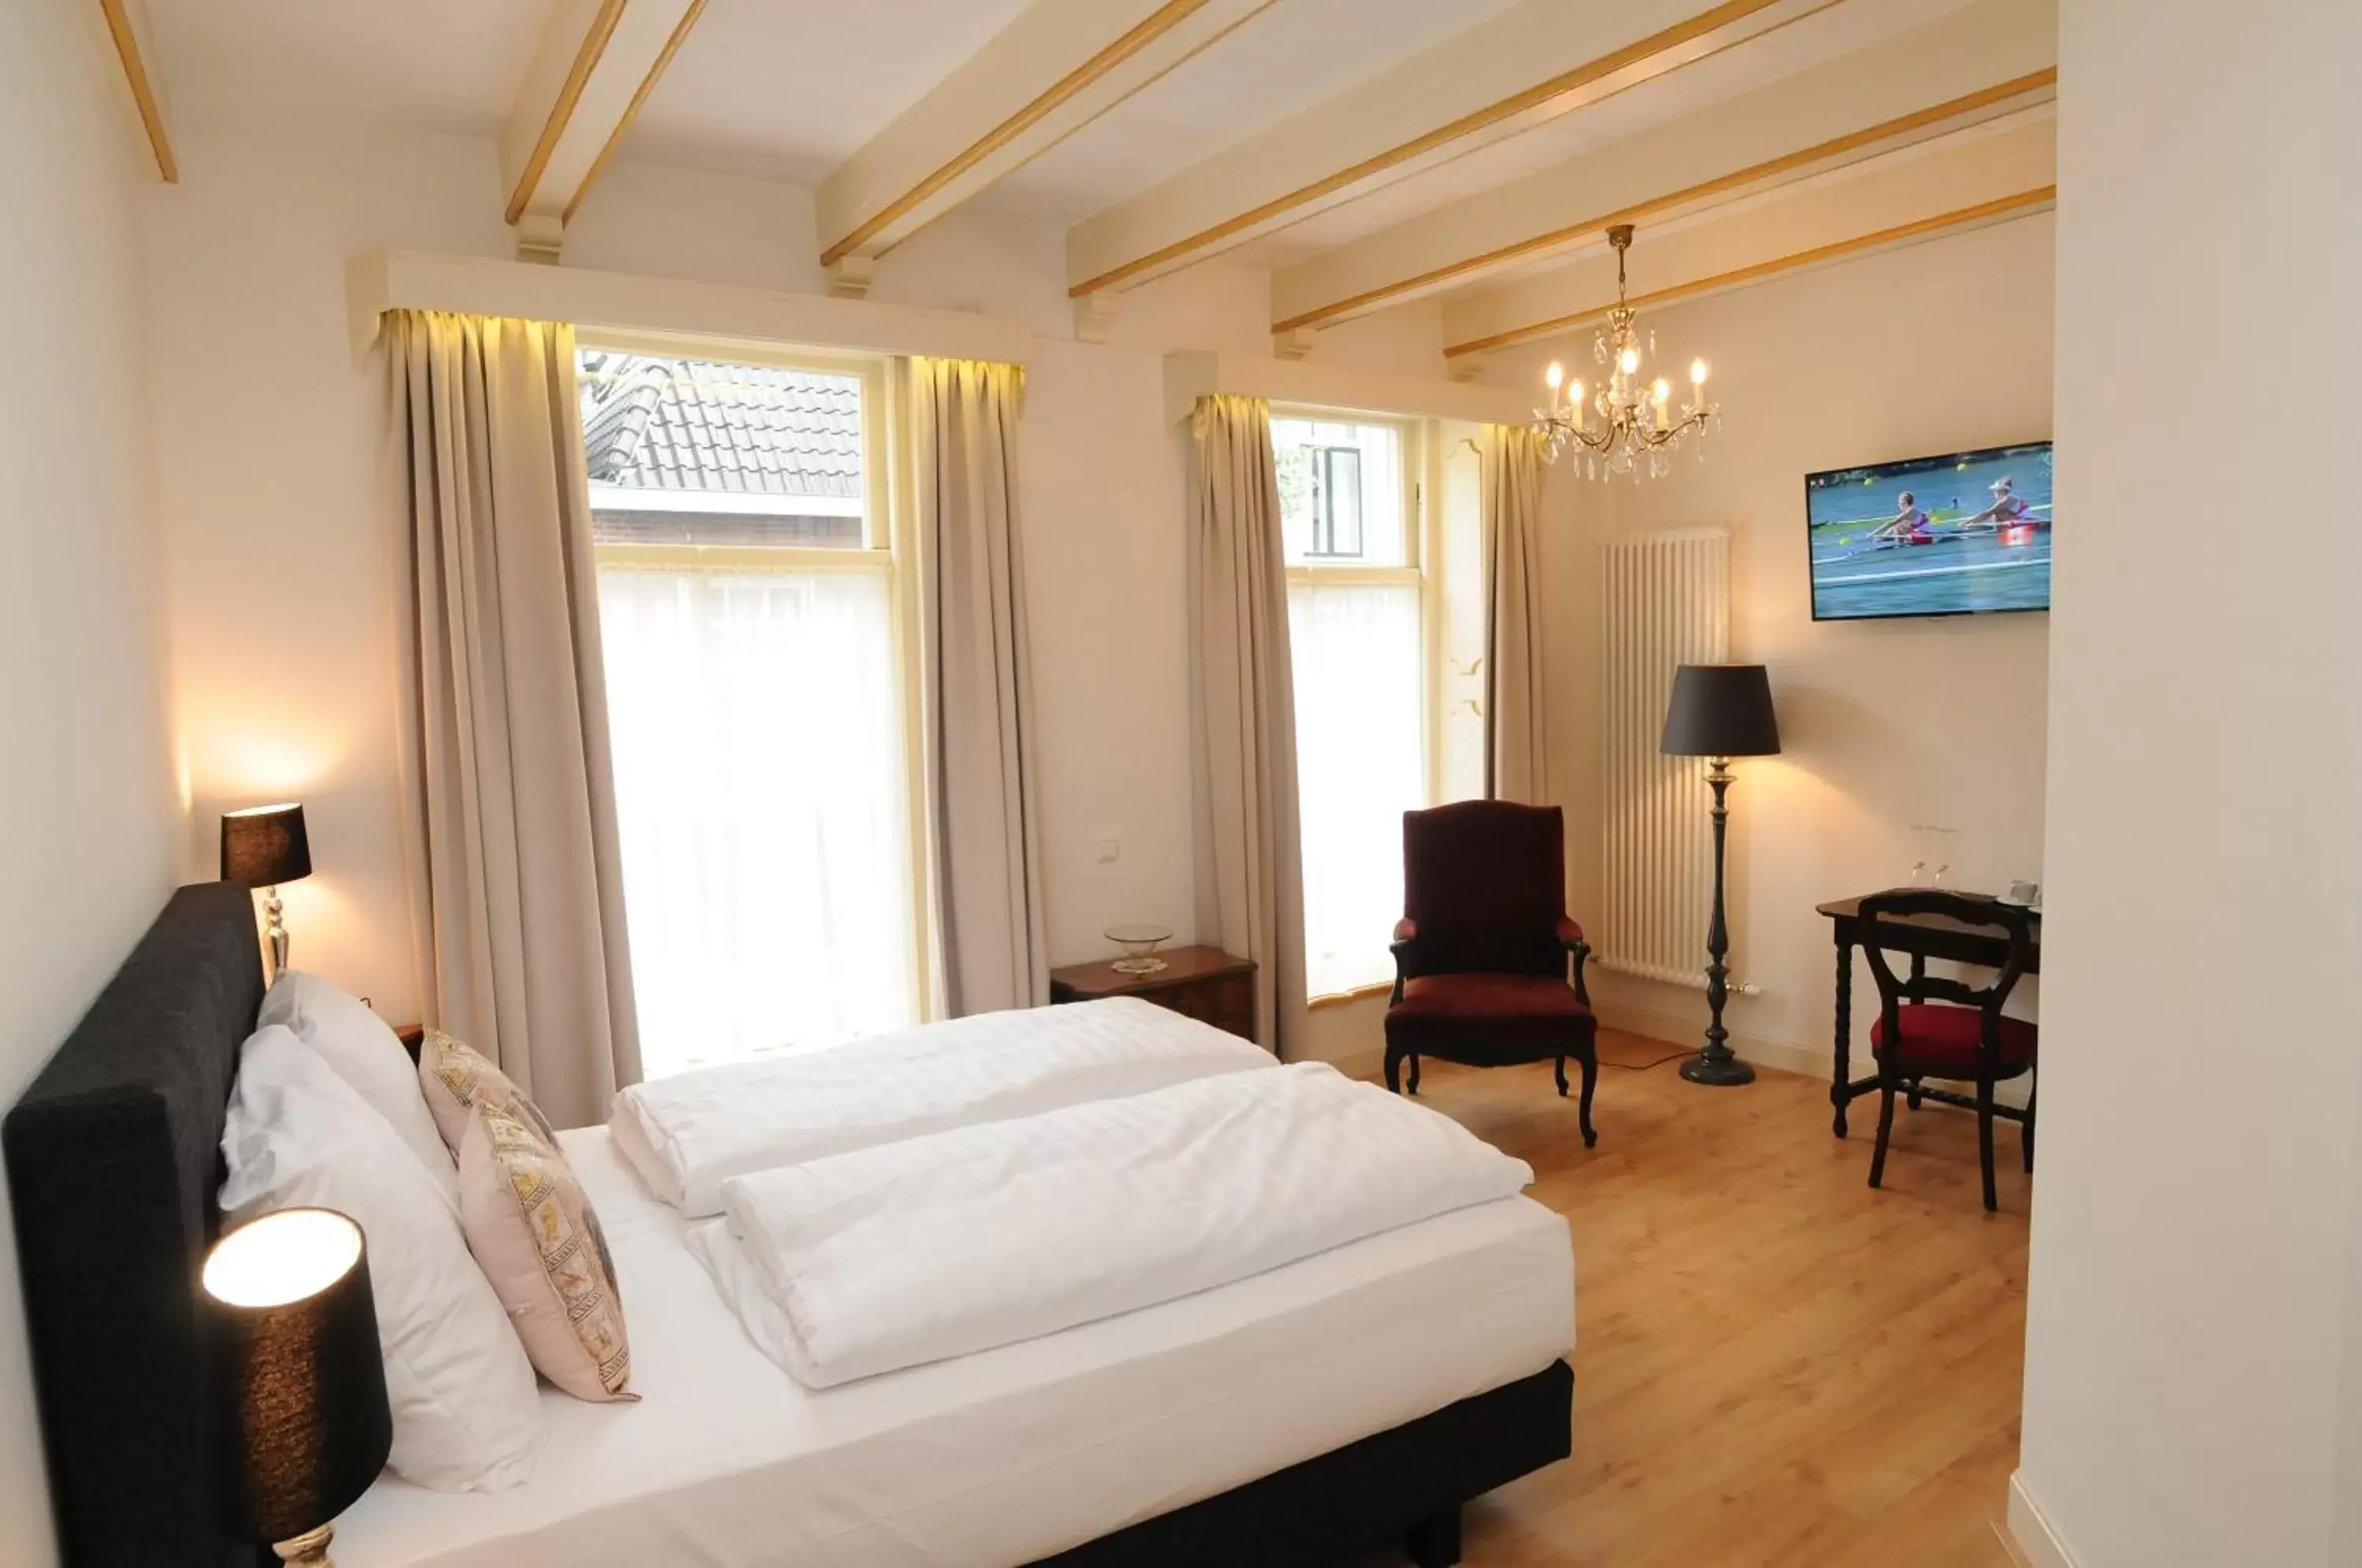 Bed, Room Photo in Hotel De Gulden Waagen